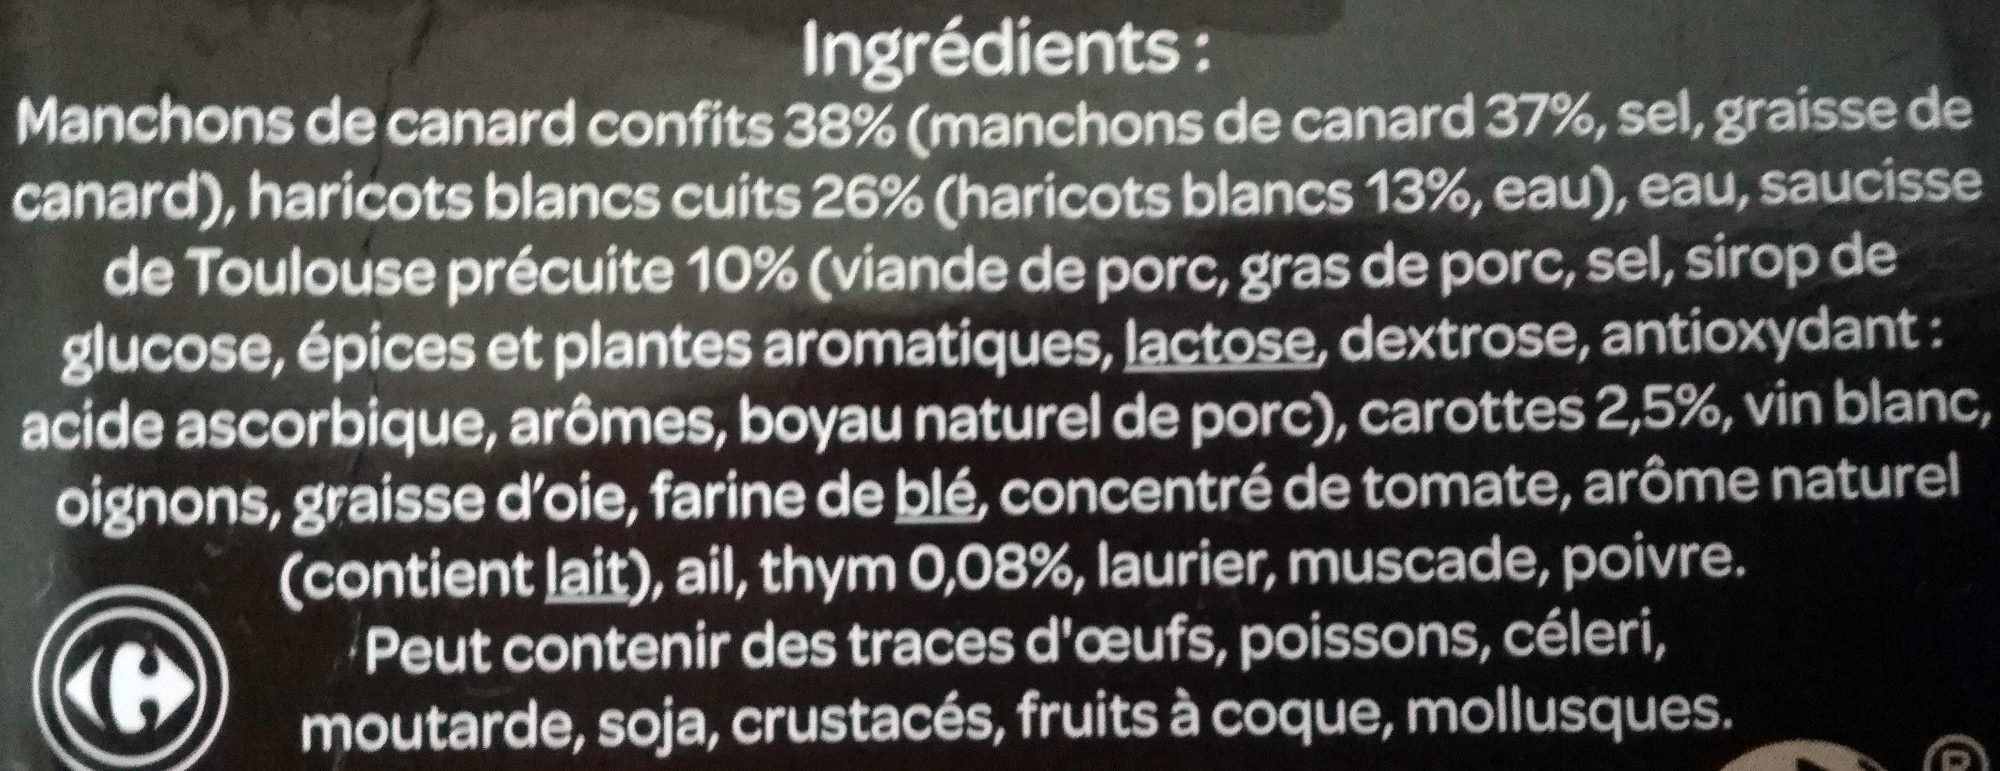 Cassoulet au Confit de Canard - Ingrédients